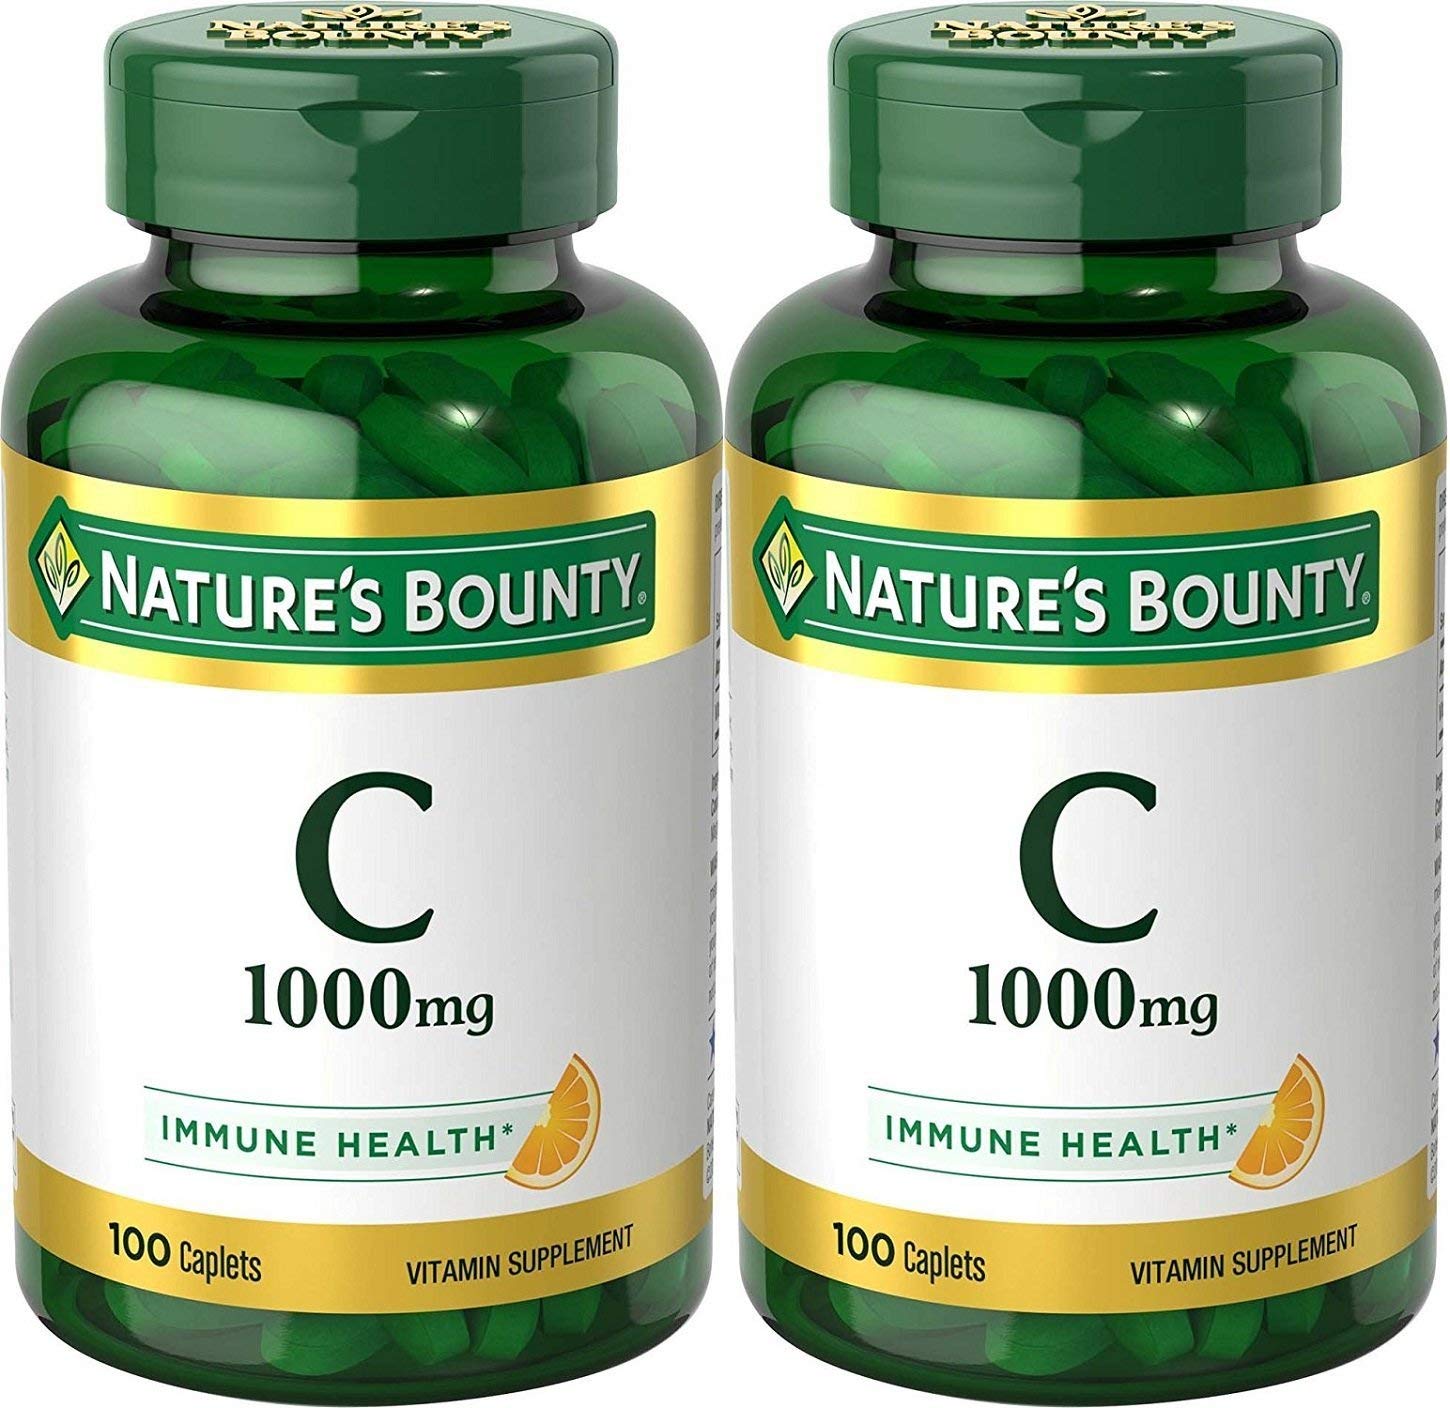 Nature's Bounty Vitamin C Pills and Supplemen…